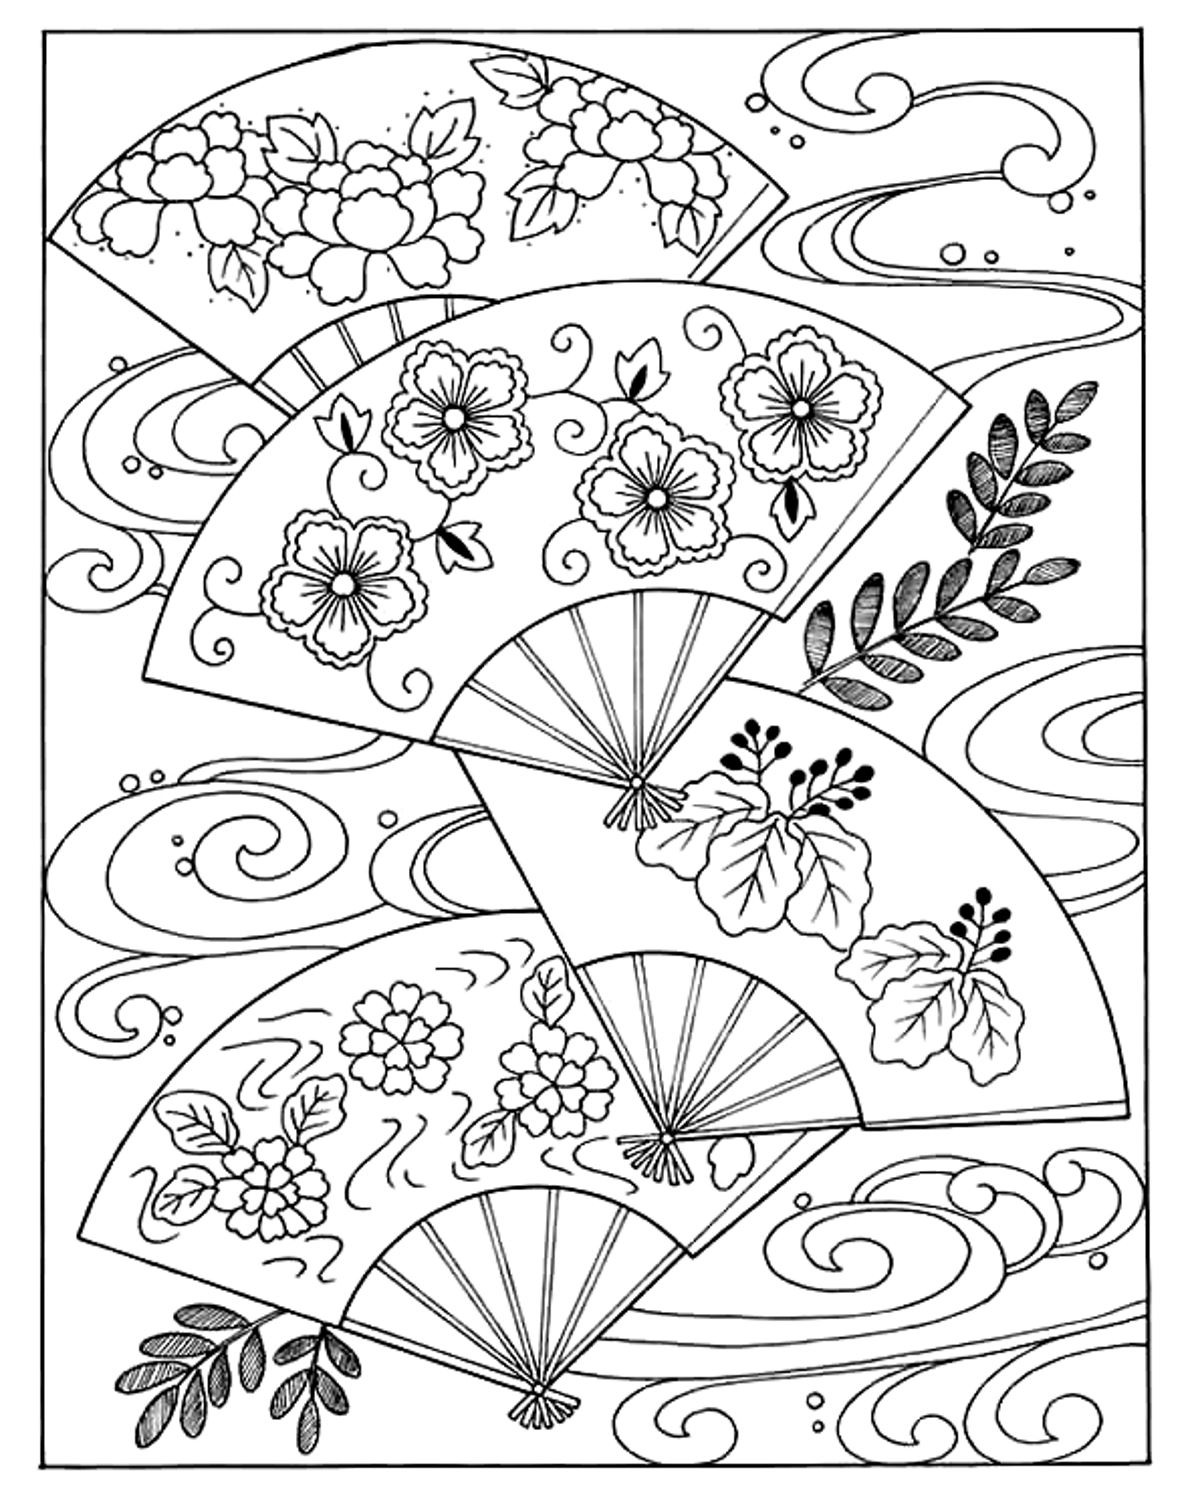 Magníficos leques japoneses, com padrões tradicionais. Quatro leques com padrões diferentes e um fundo simples com folhas e formas curvas para colorir